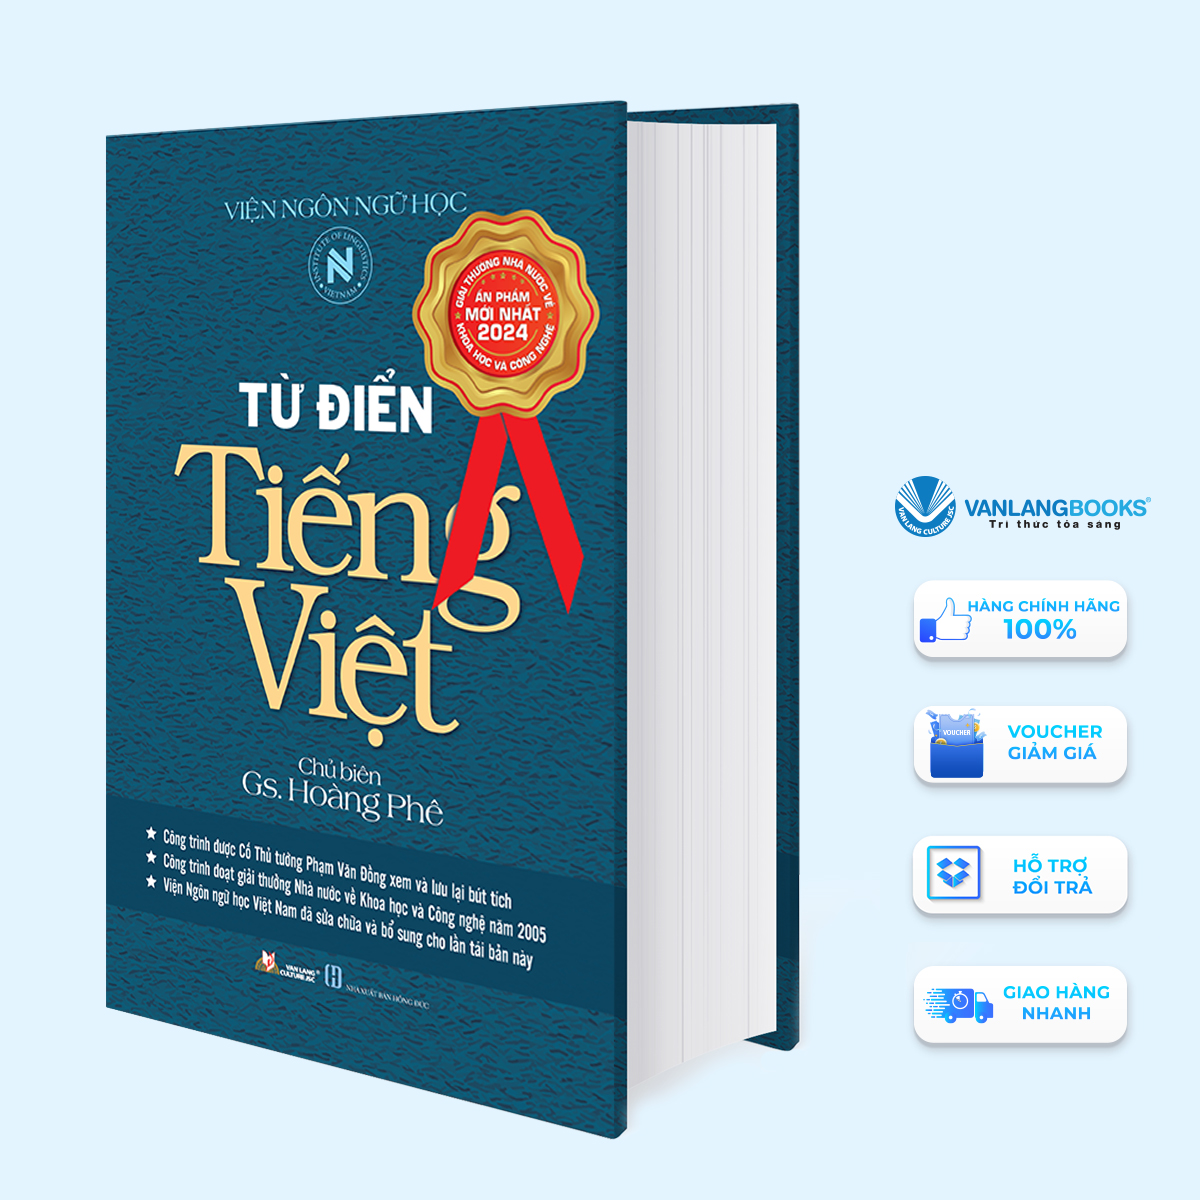 Hình ảnh Từ Điển Tiếng Việt (Hoàng Phê) - Tái Bản - Vanlangbooks